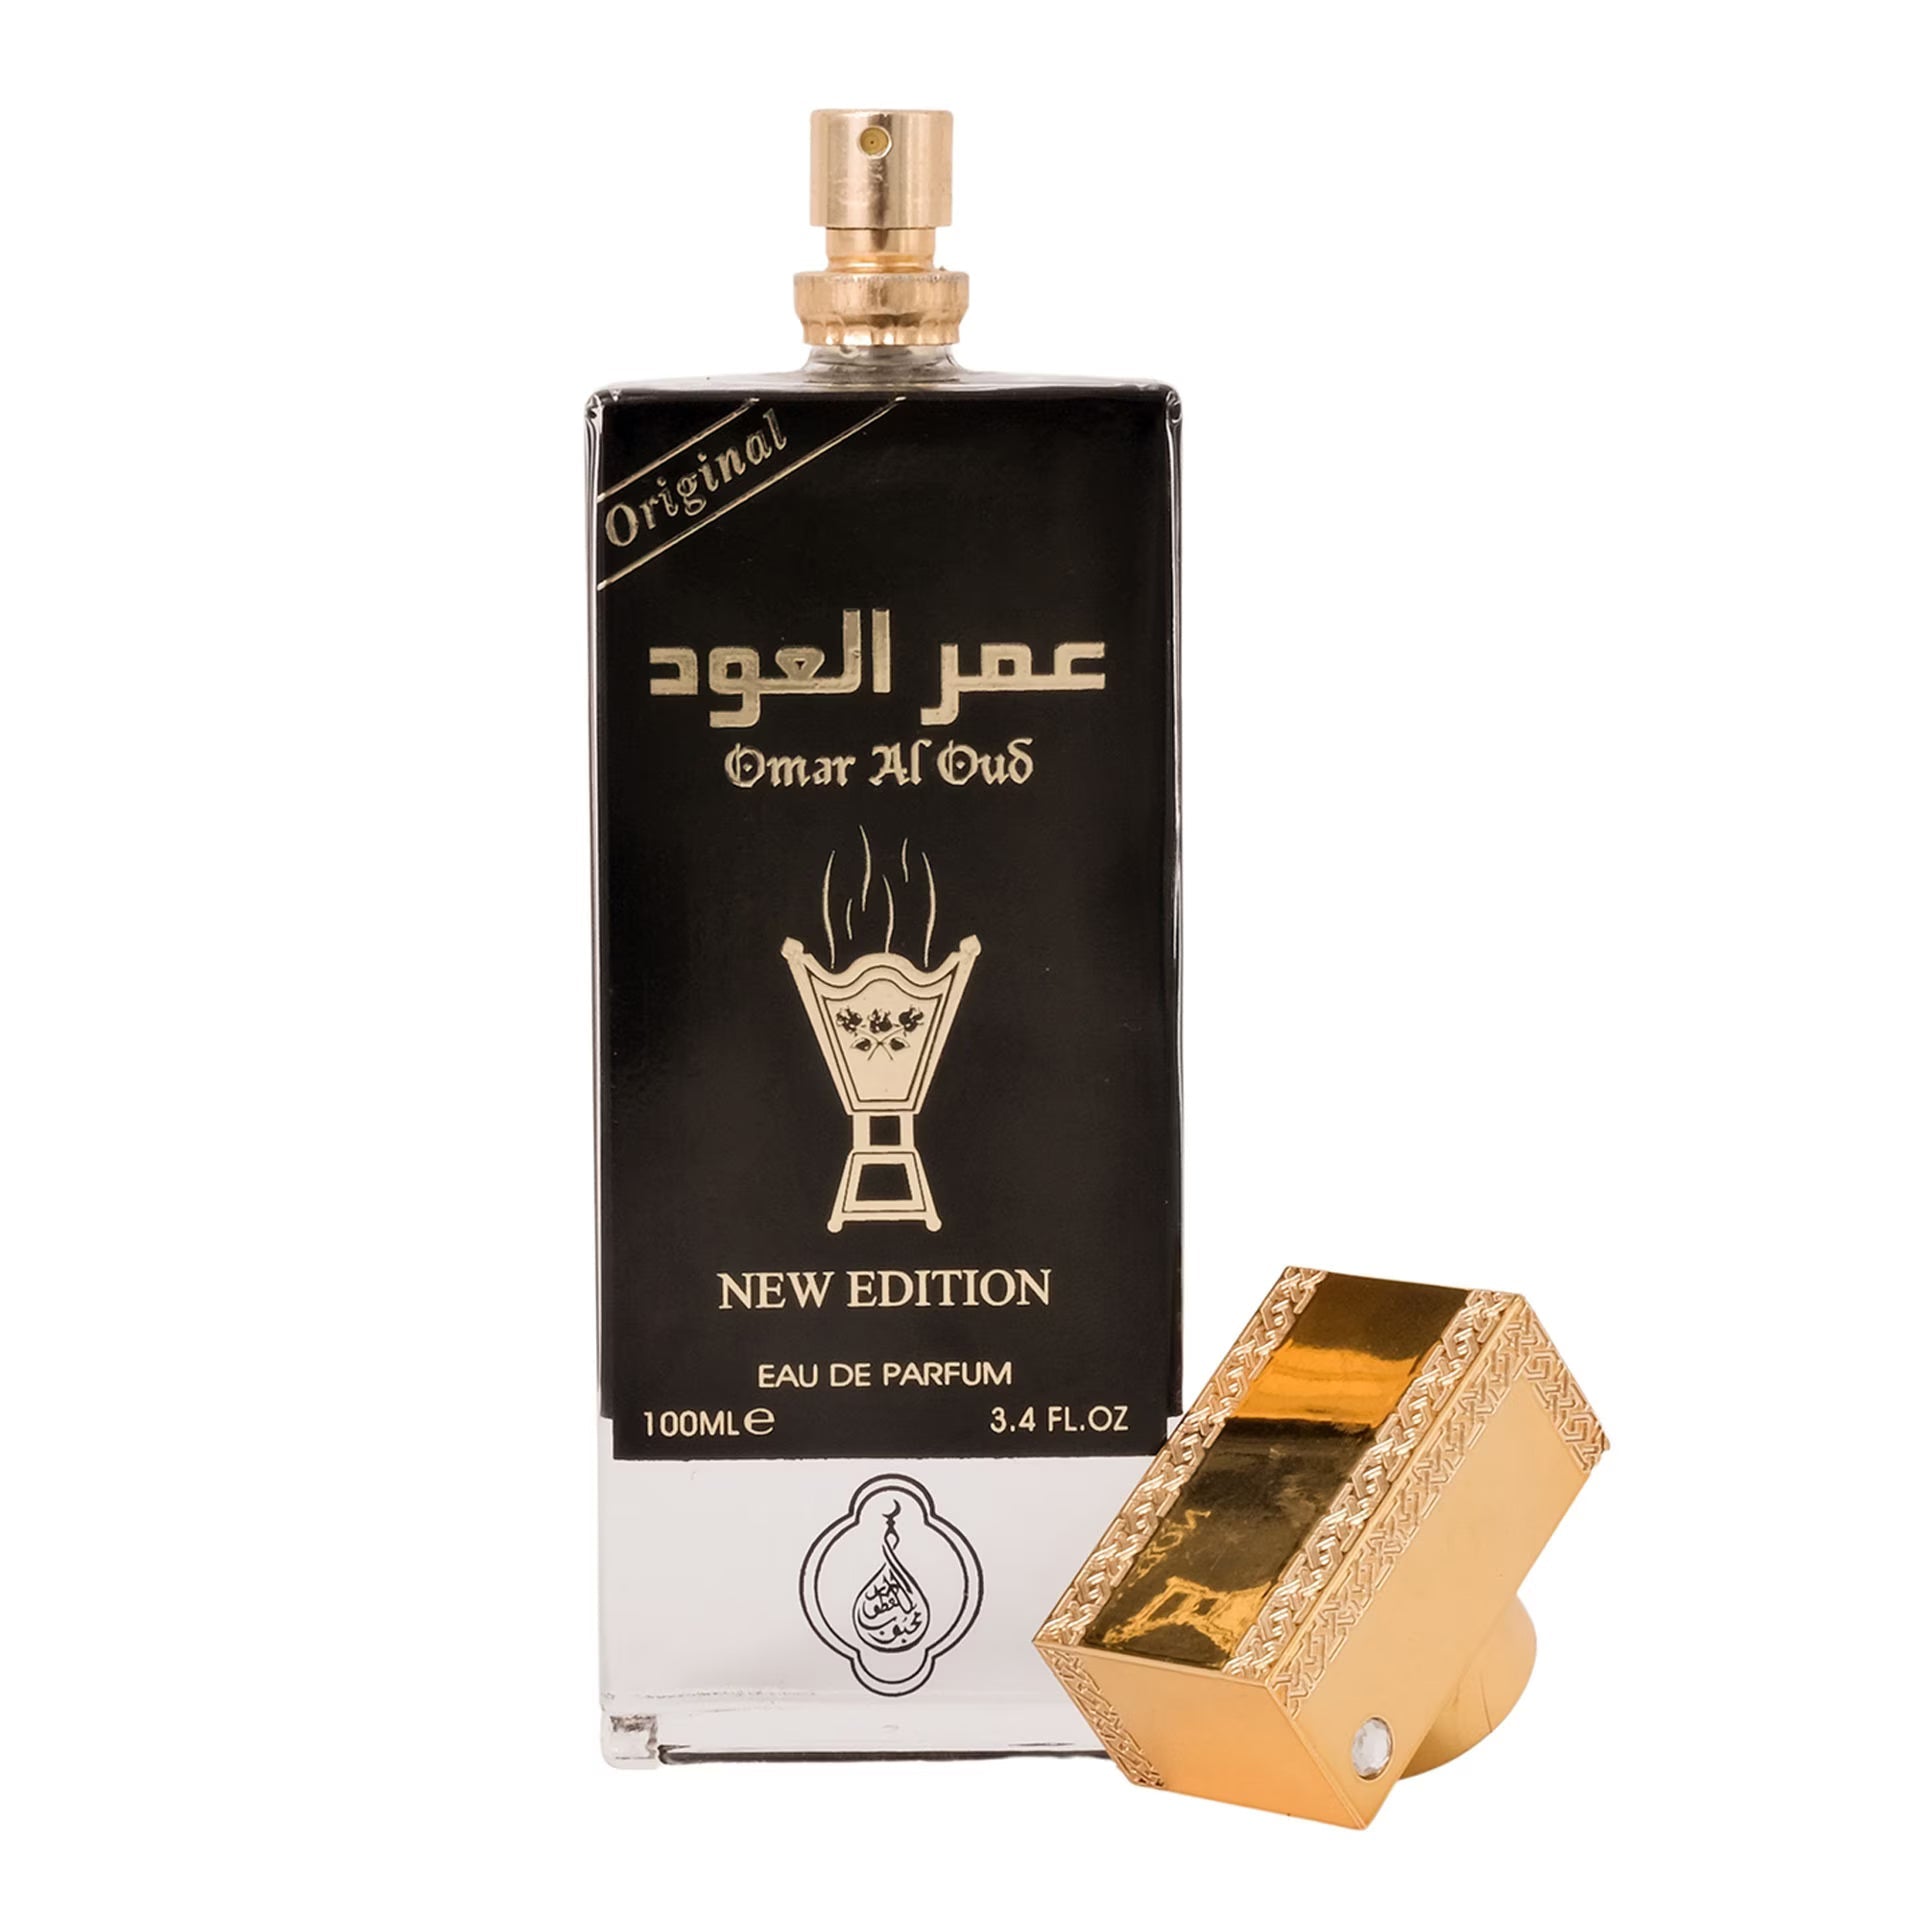 Omar al Oud Eau De Parfum New Edition 100ml Value Pack of 12 